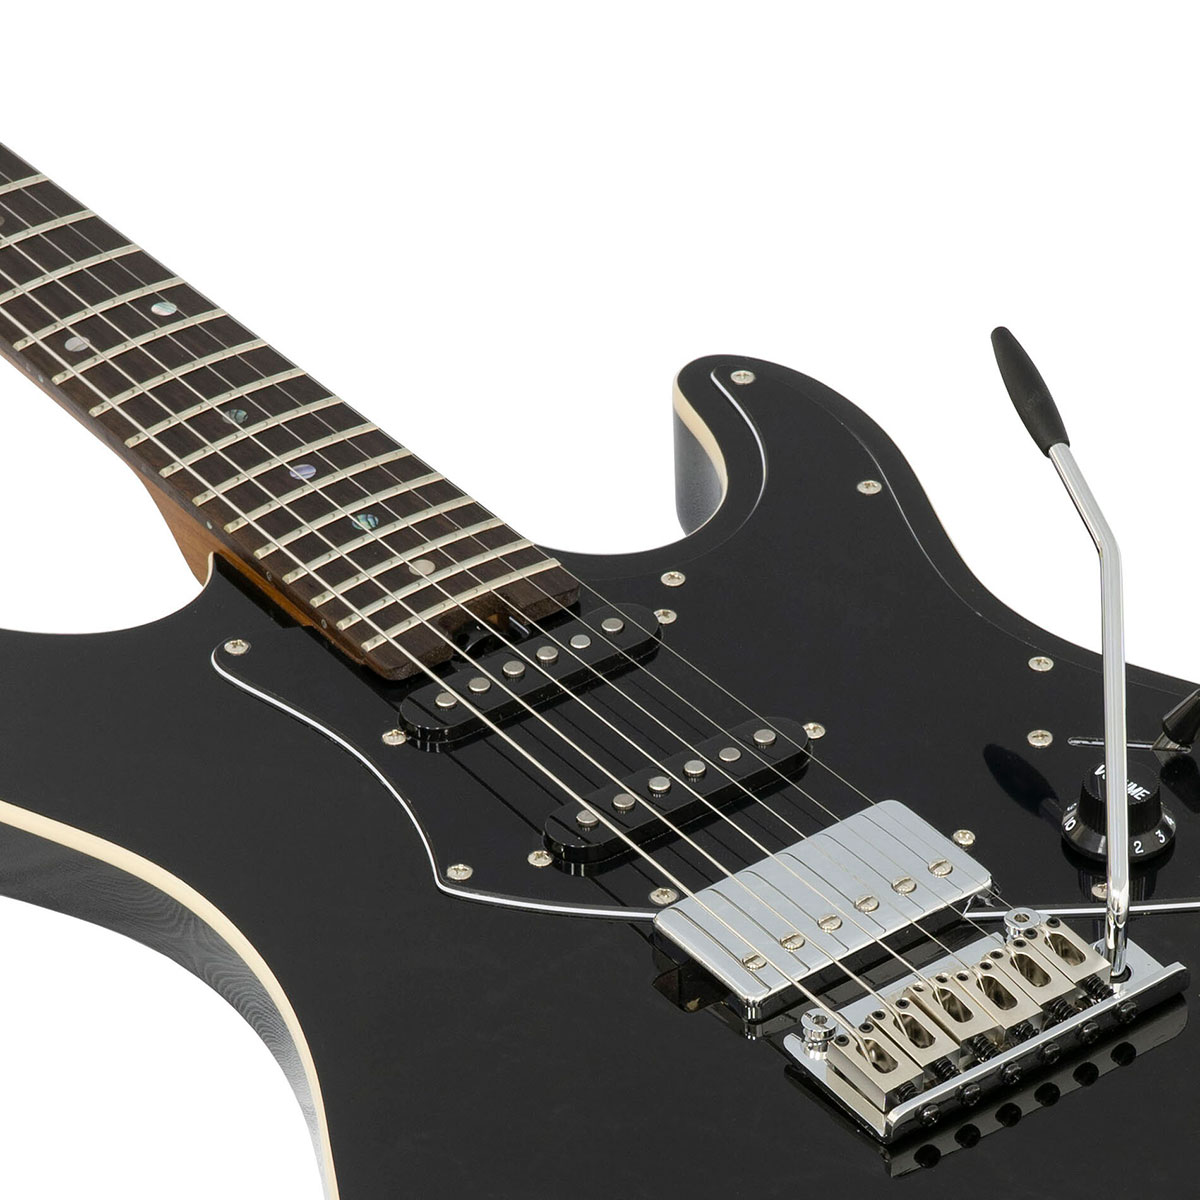 AriaProII 714-BLACK エレキギター 【数量限定】ブラック 黒